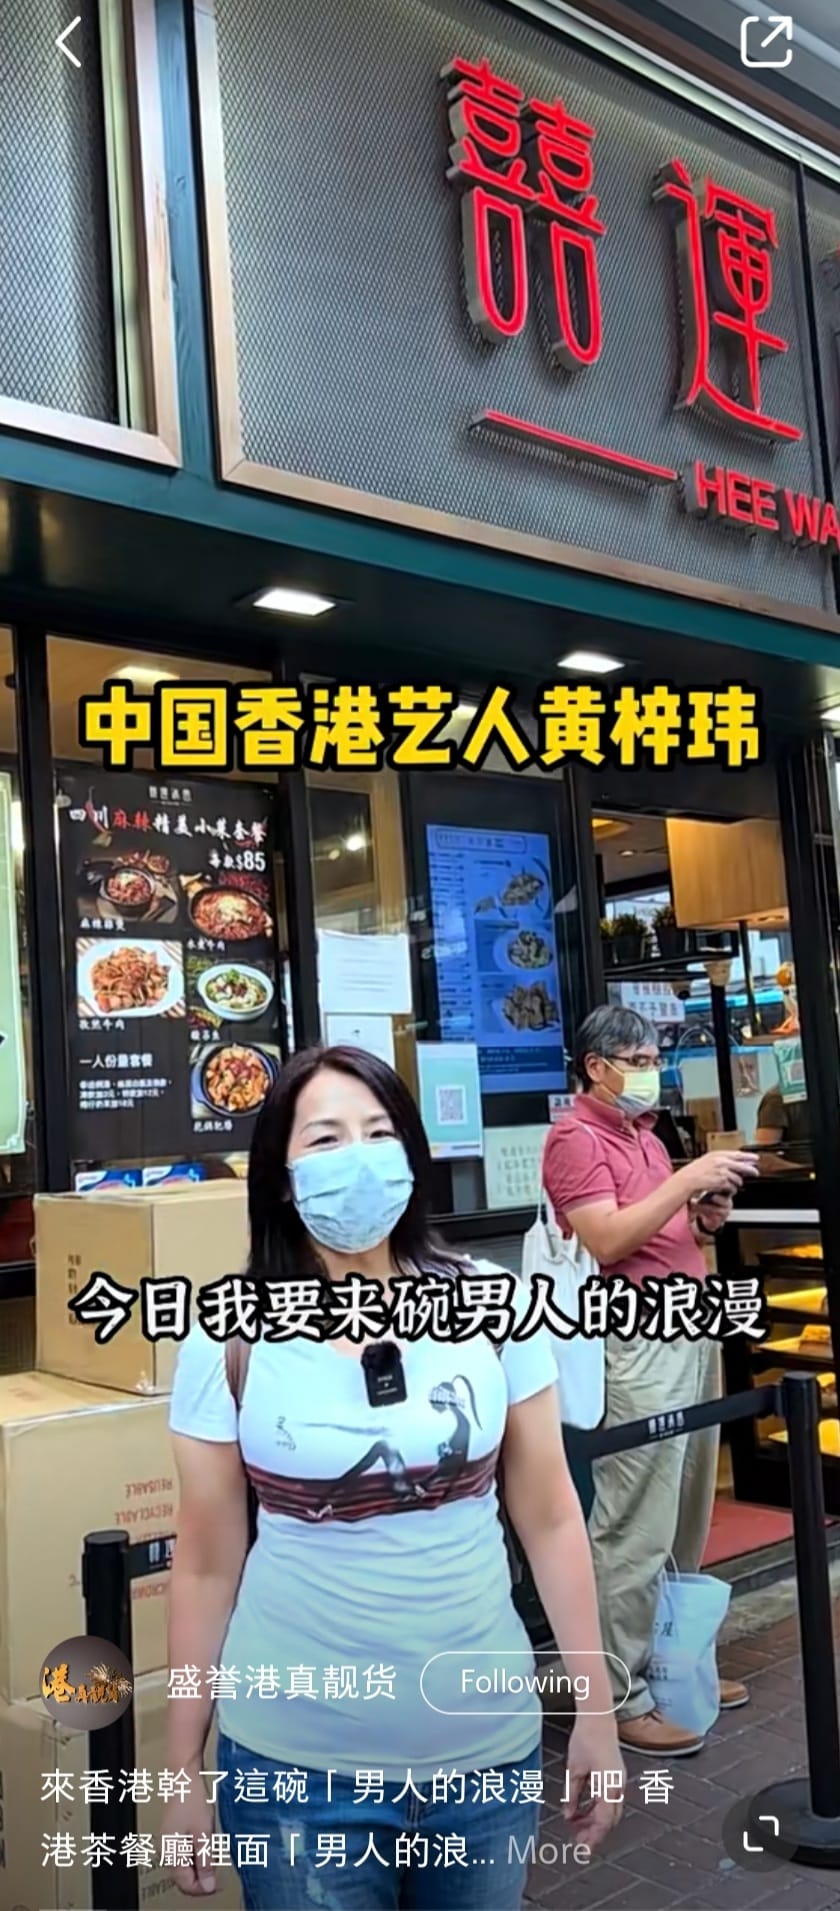 早前黃梓瑋開設「盛譽港真靚貨」頻道，拍片介紹香港文化。